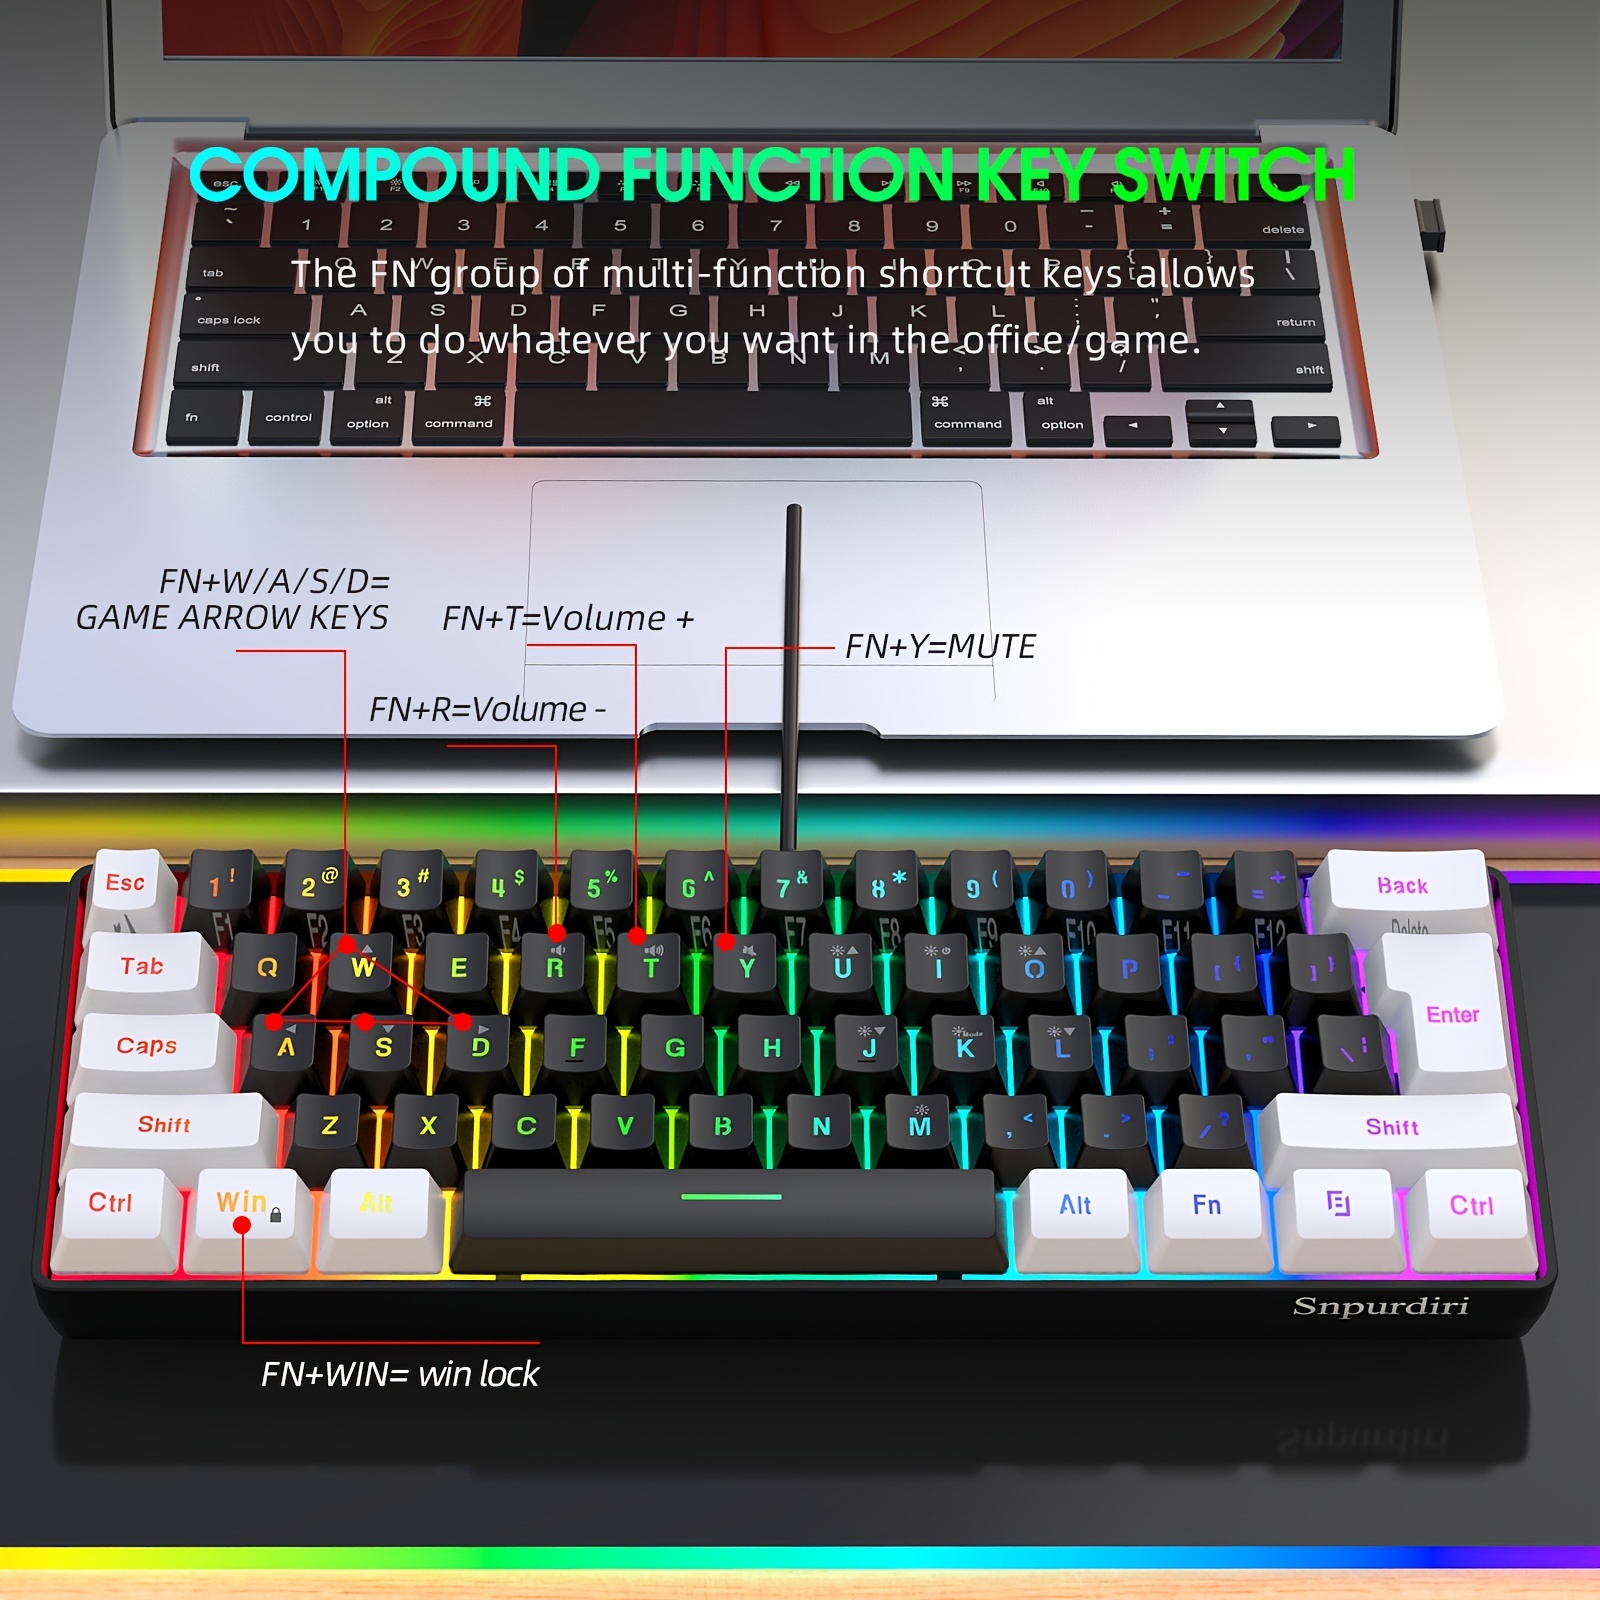 SNPURDIRI 60% 有線ゲーミングキーボード、小型 RGB バックライト付きメンブレンゲーミングキーボード、超コンパクトミニ防水キーボード  PC コンピュータゲーマー用 ホワイトとブラック